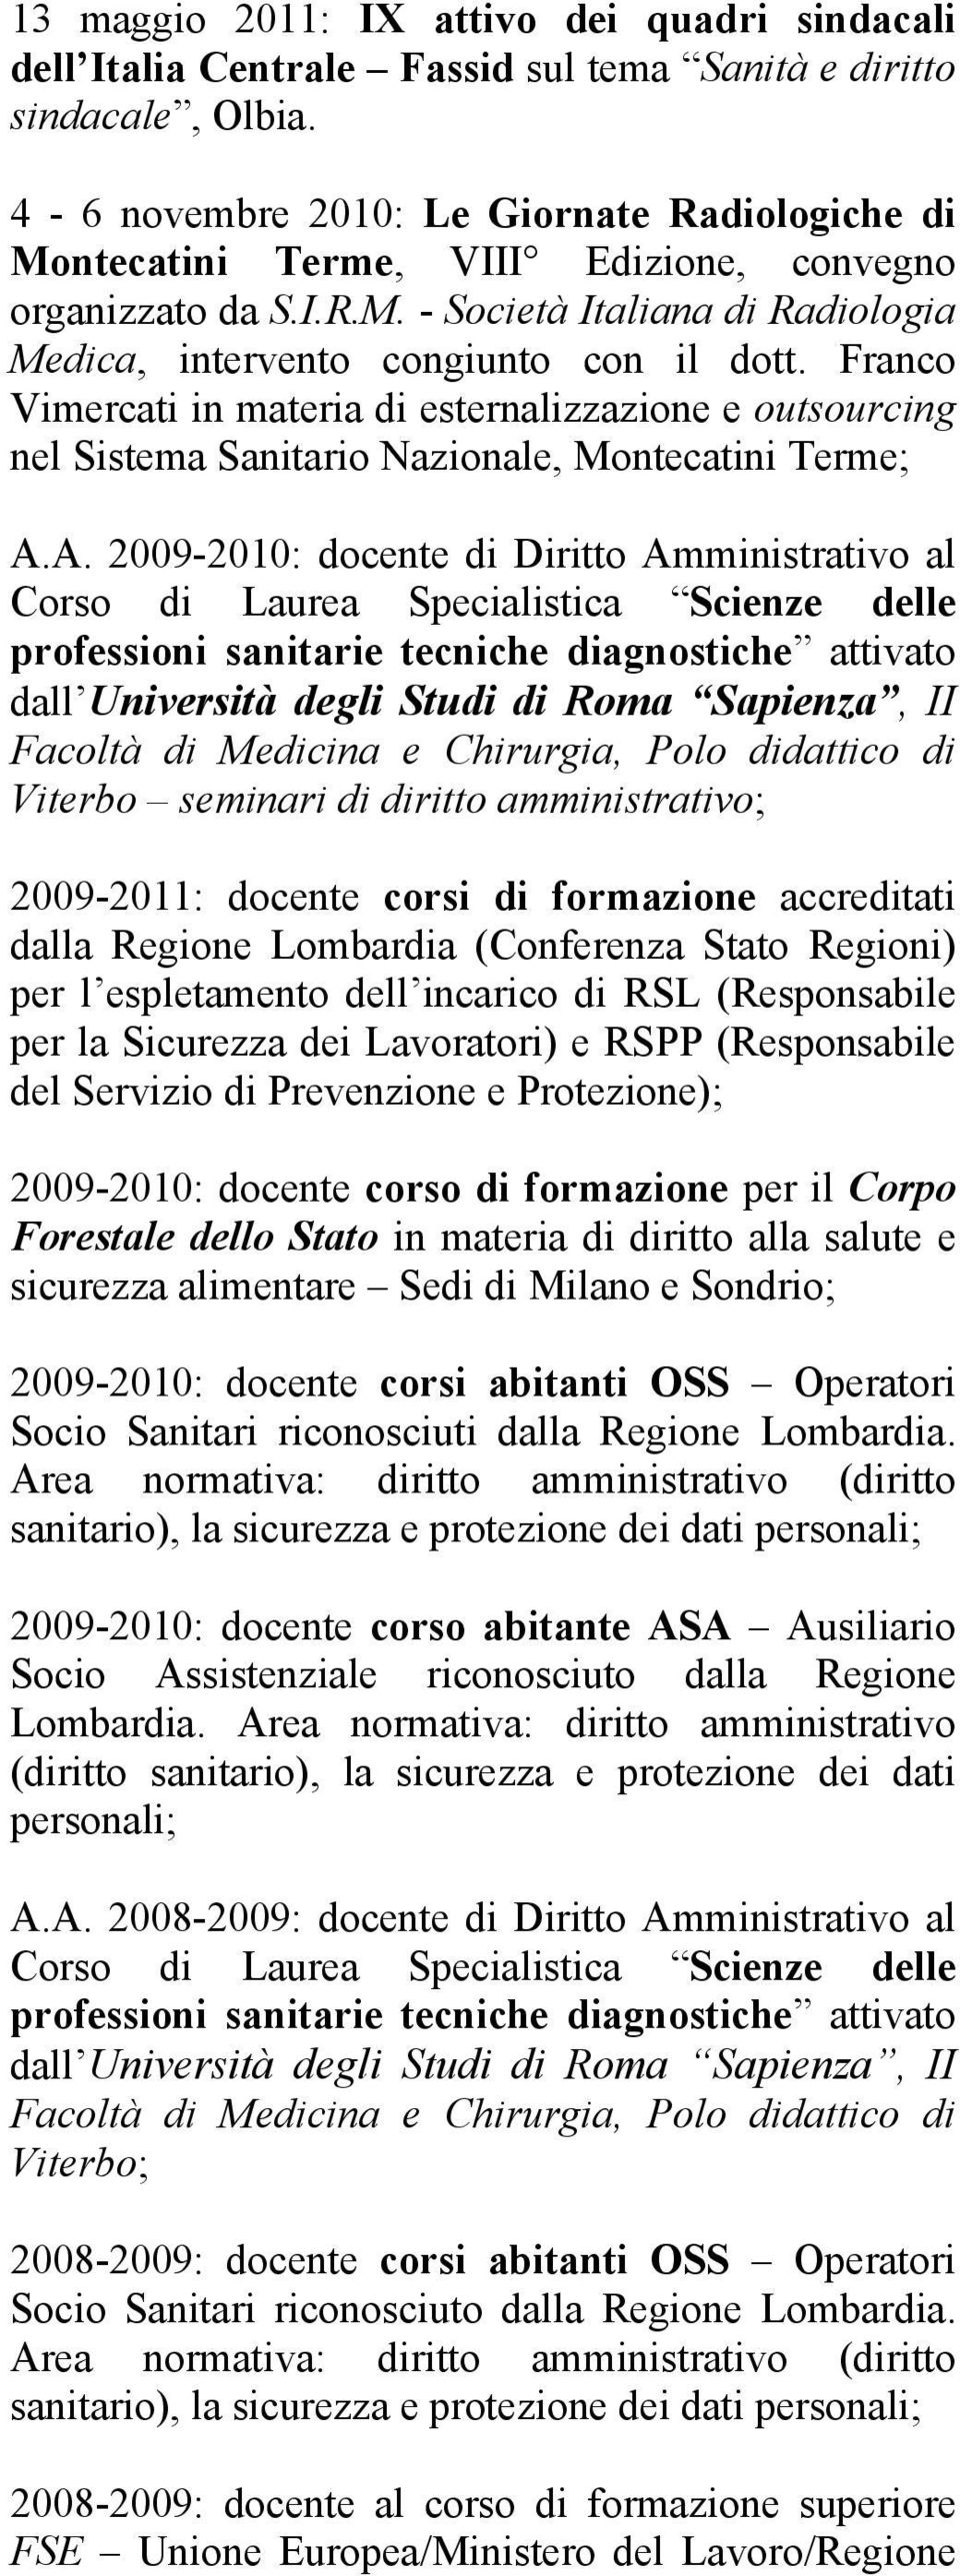 Franco Vimercati in materia di esternalizzazione e outsourcing nel Sistema Sanitario Nazionale, Montecatini Terme; A.